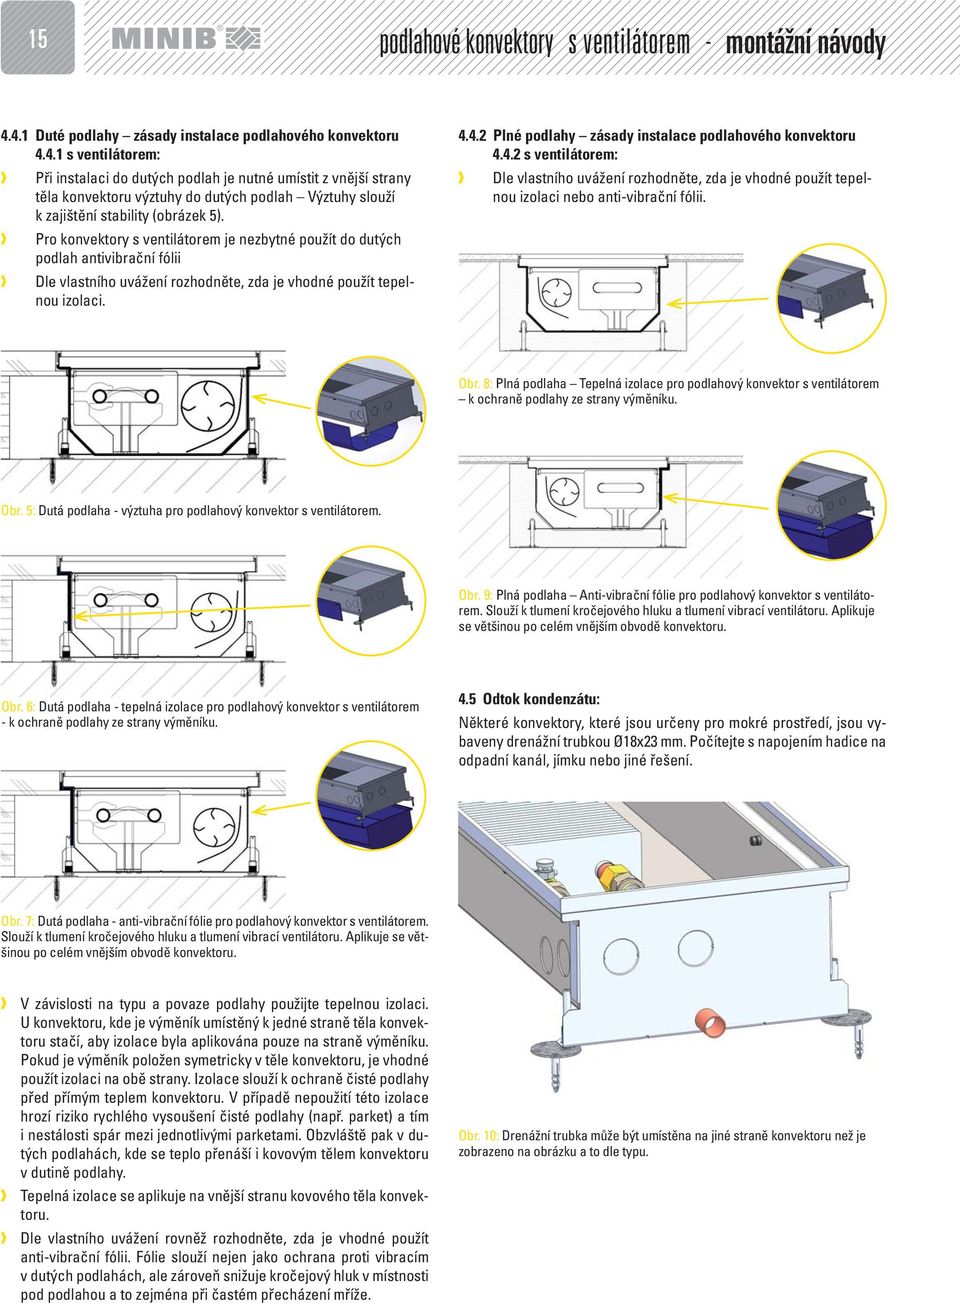 Pro konvektory s ventilátorem je nezbytné použít do dutých podlah antivibrační fólii Dle vlastního uvážení rozhodněte, zda je vhodné použít tepelnou izolaci. 4.